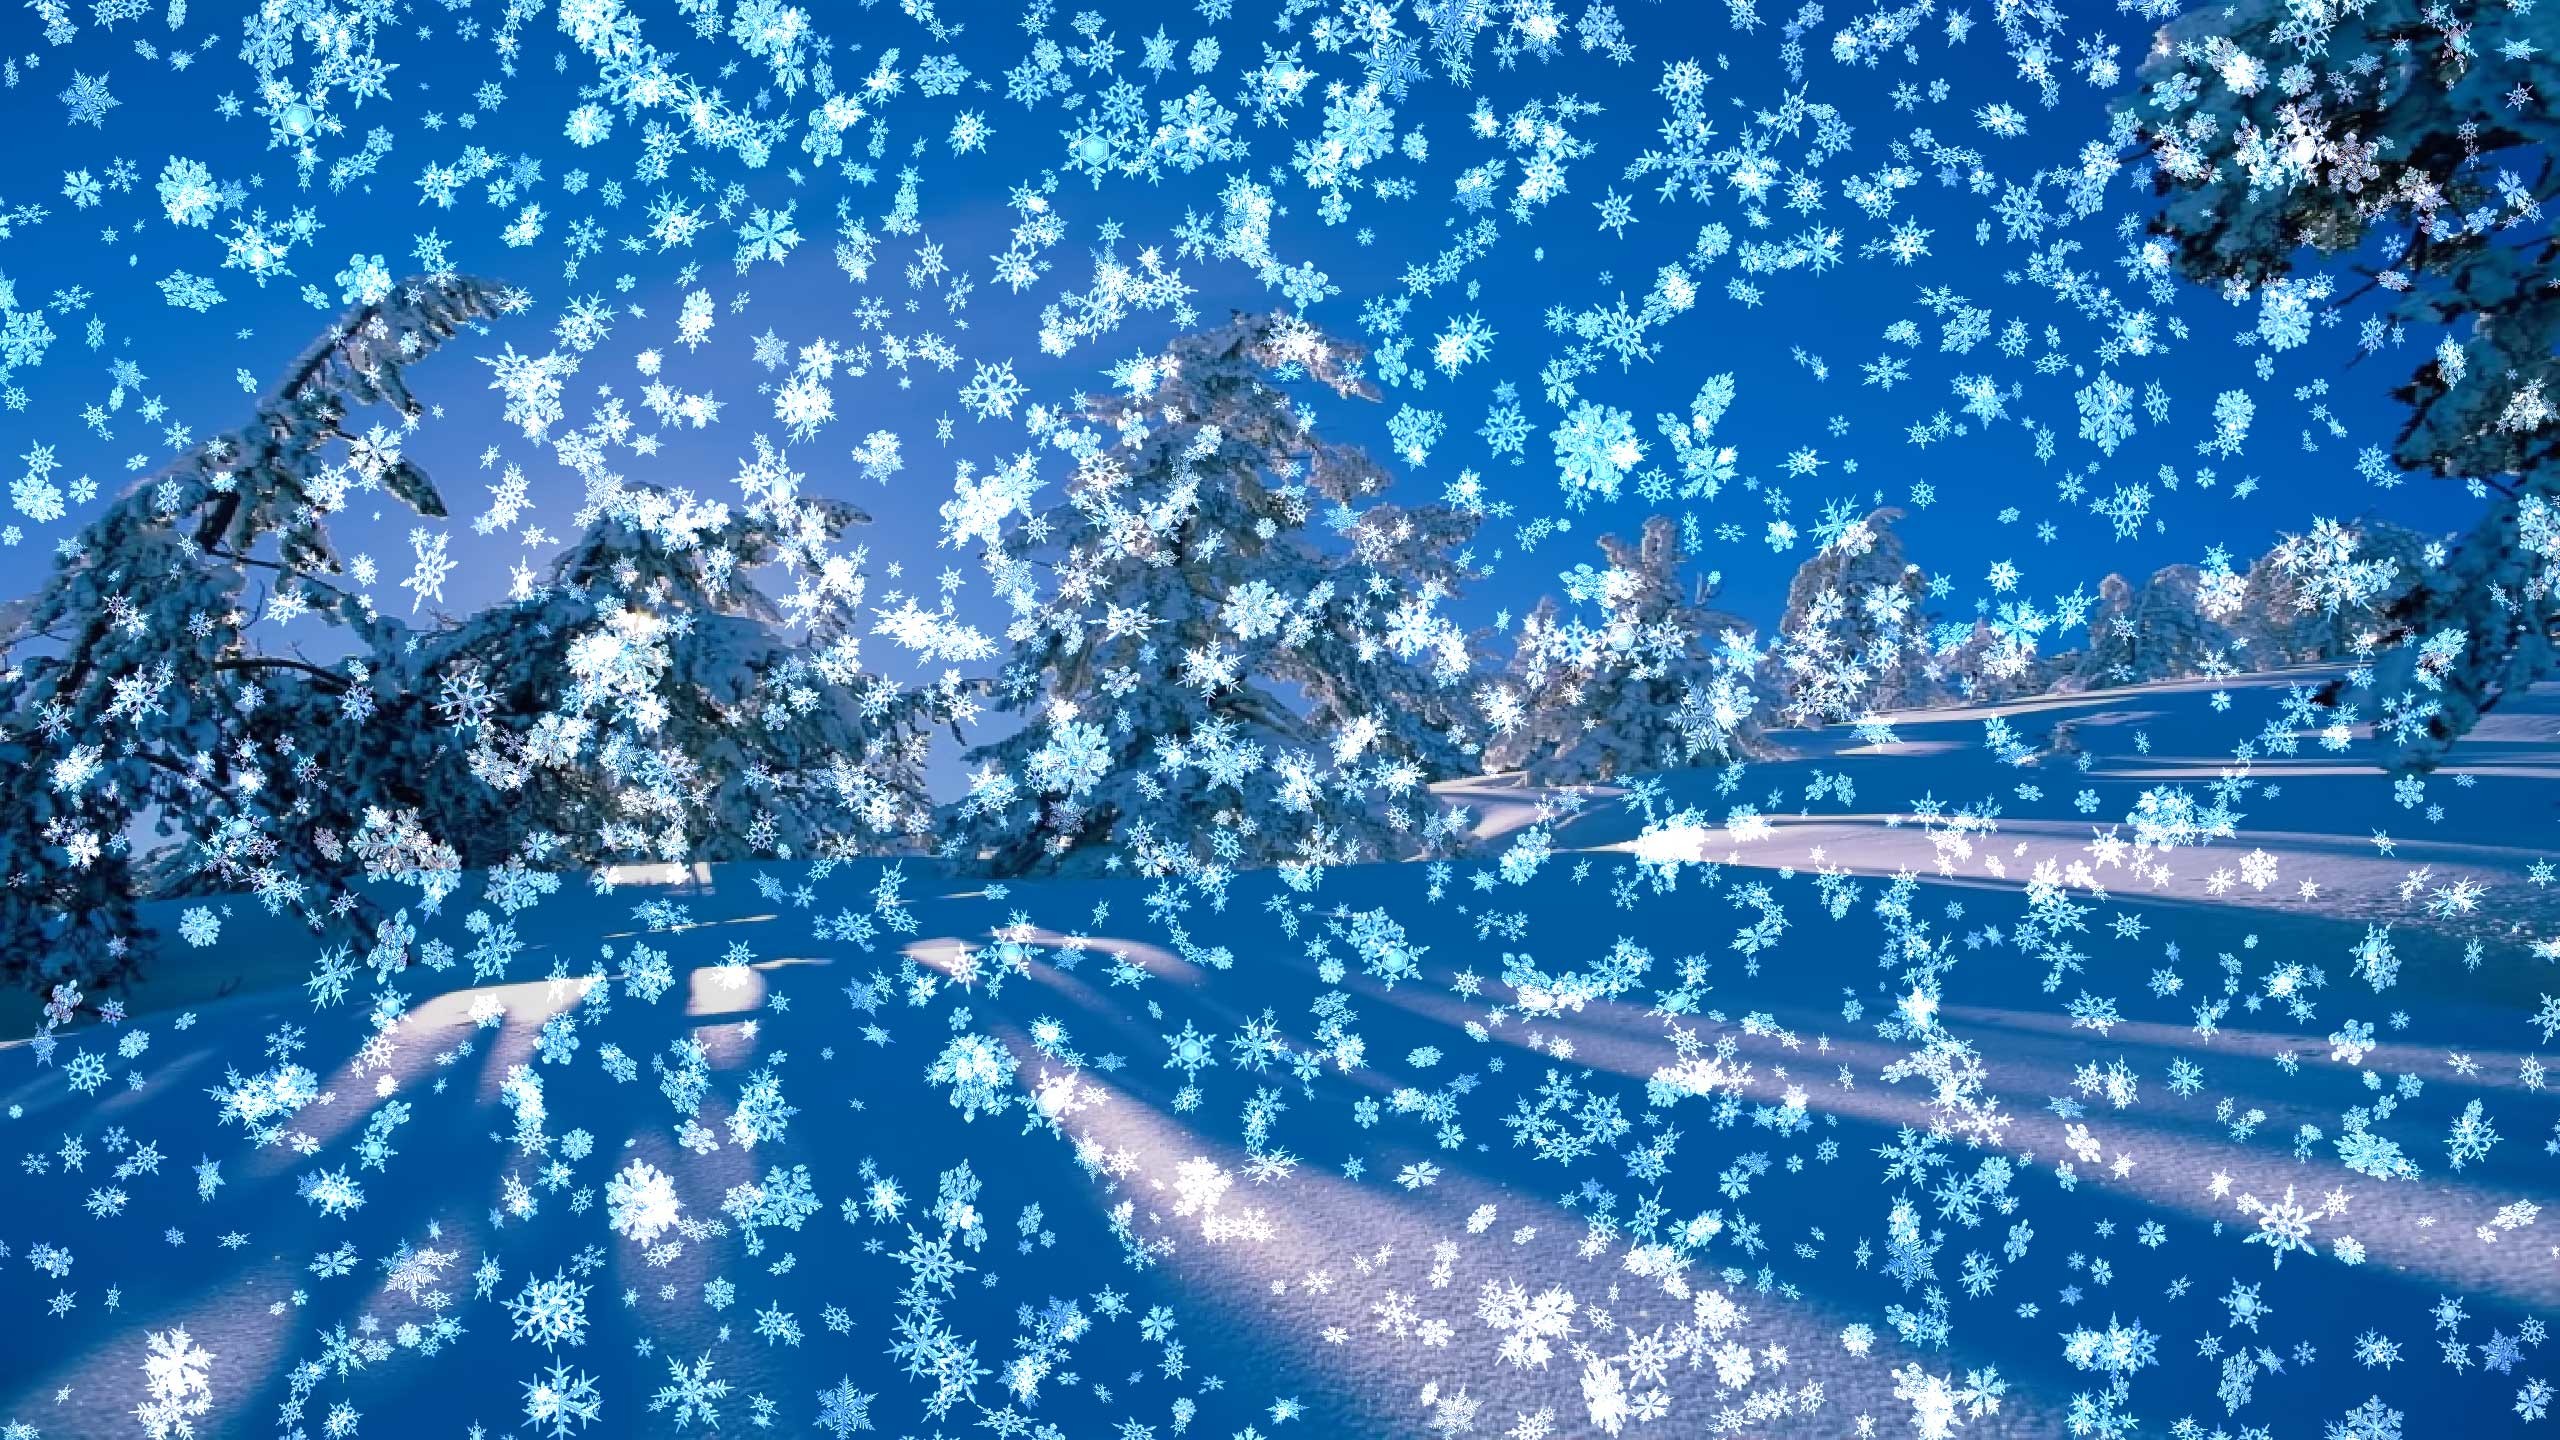 Snowy Desktop 3D